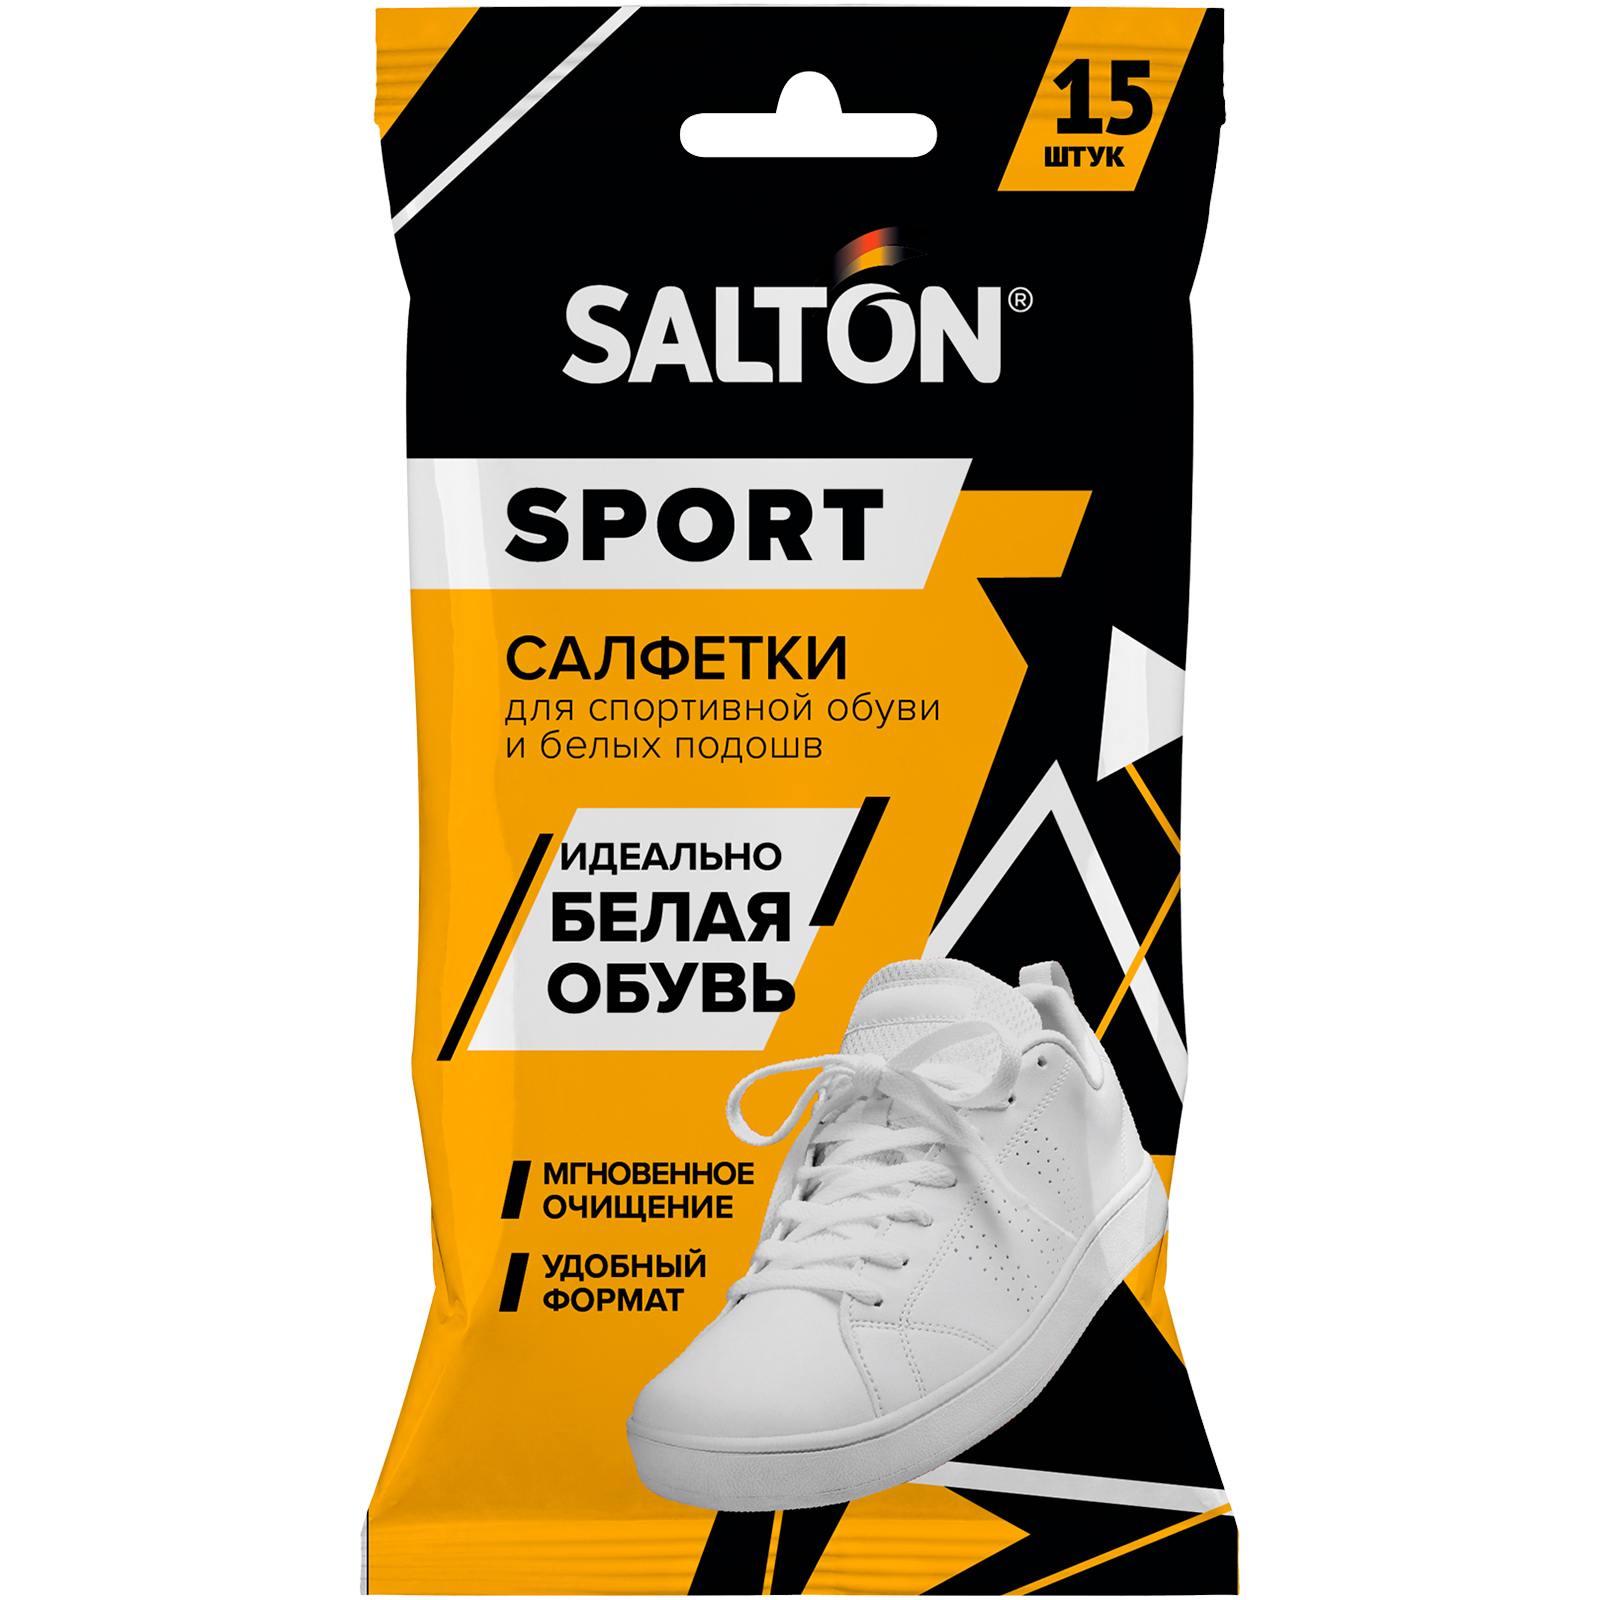 Влажные салфетки Salton Sport для очищения белой обуви и подошв